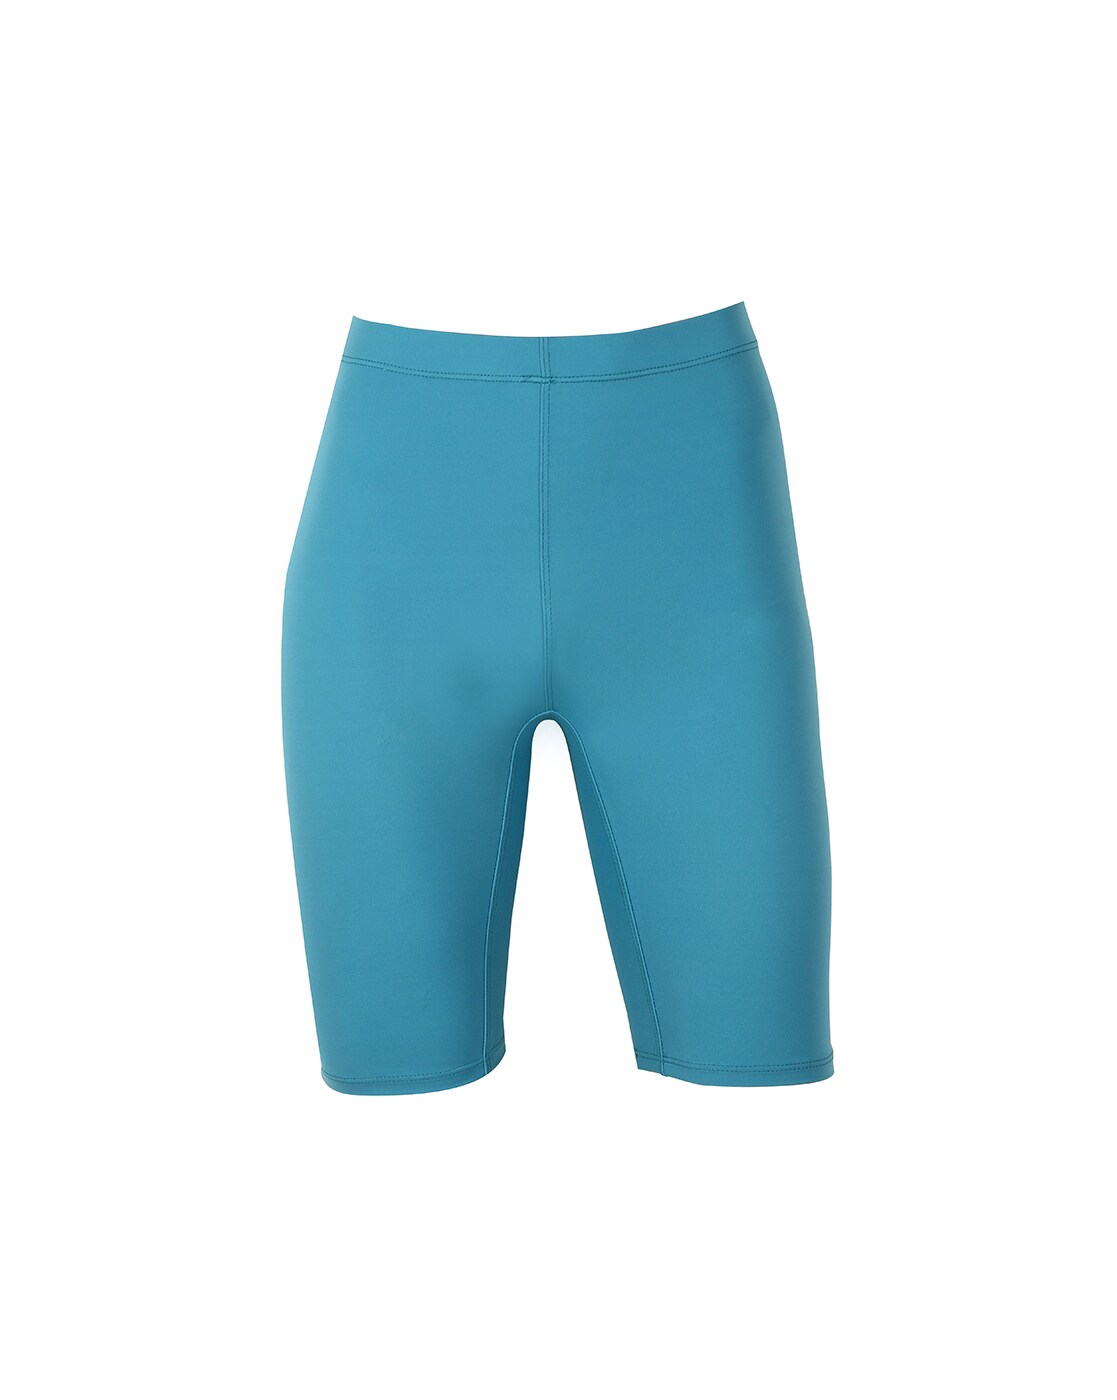 Buy Blue Swimwear for Men by LYCOT Online Ajio